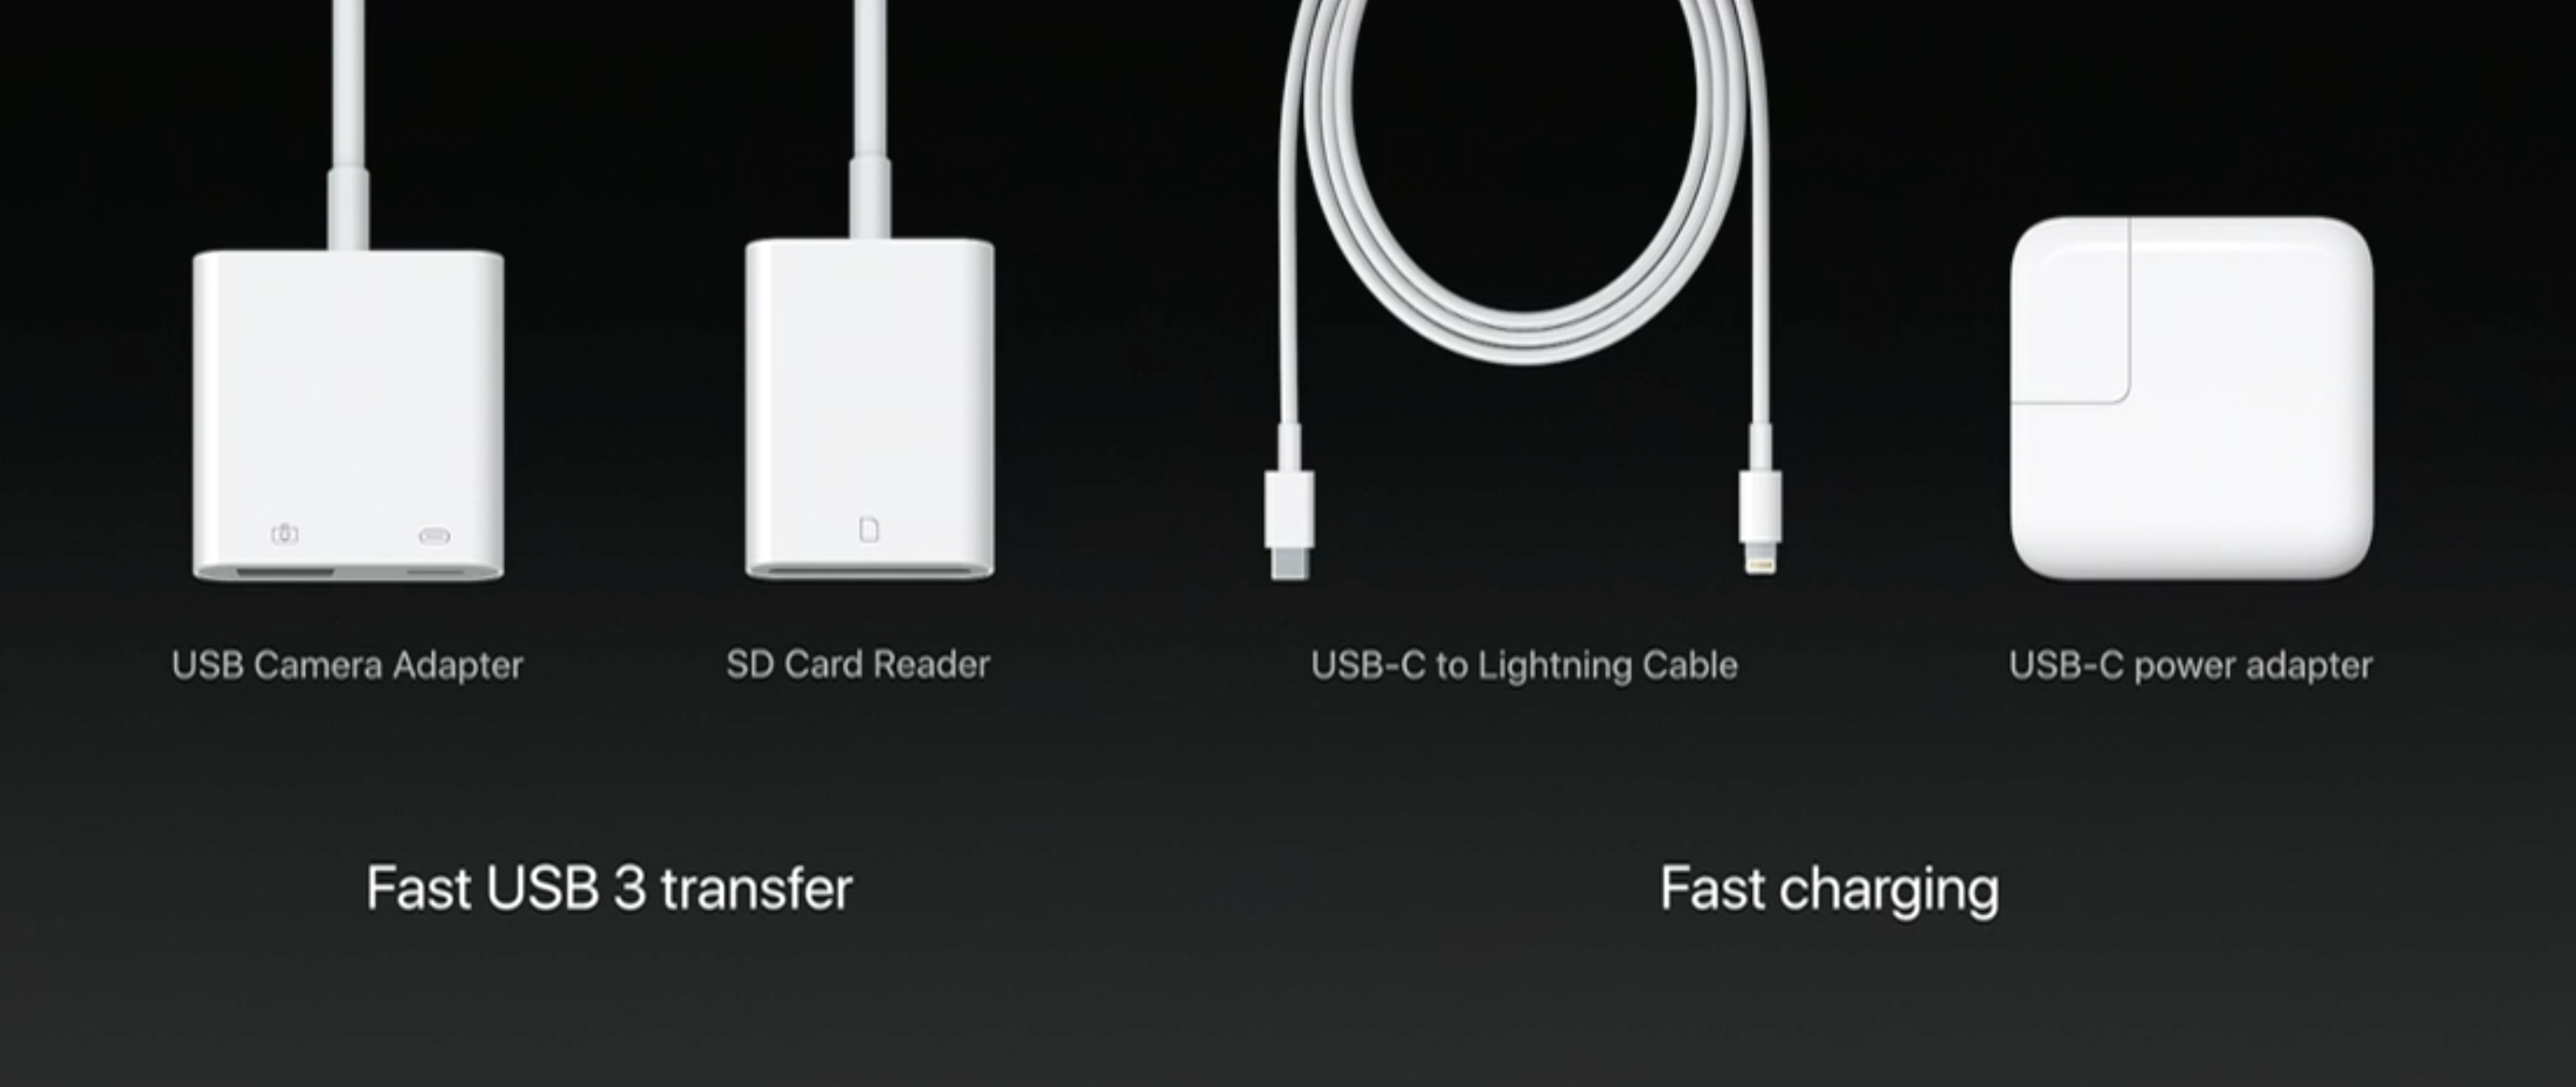 iPad Pro støtter nå USB 3.1-hastigheter via Lightning-til-USB Type-C.